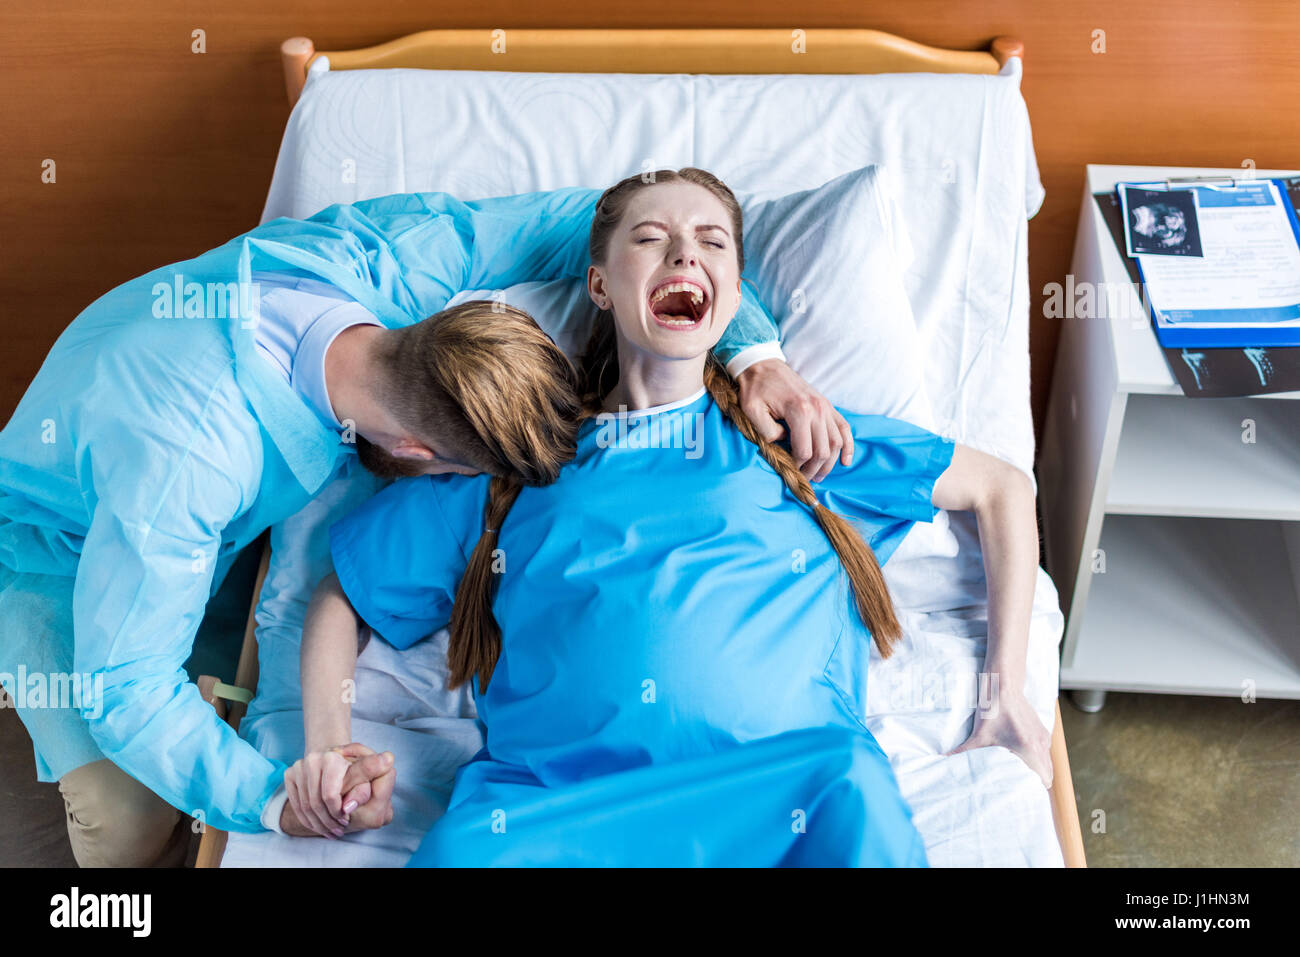 Schwangere Frau Geburt Im Krankenhaus Während Mann Umarmt Ihr Stockfotografie Alamy 